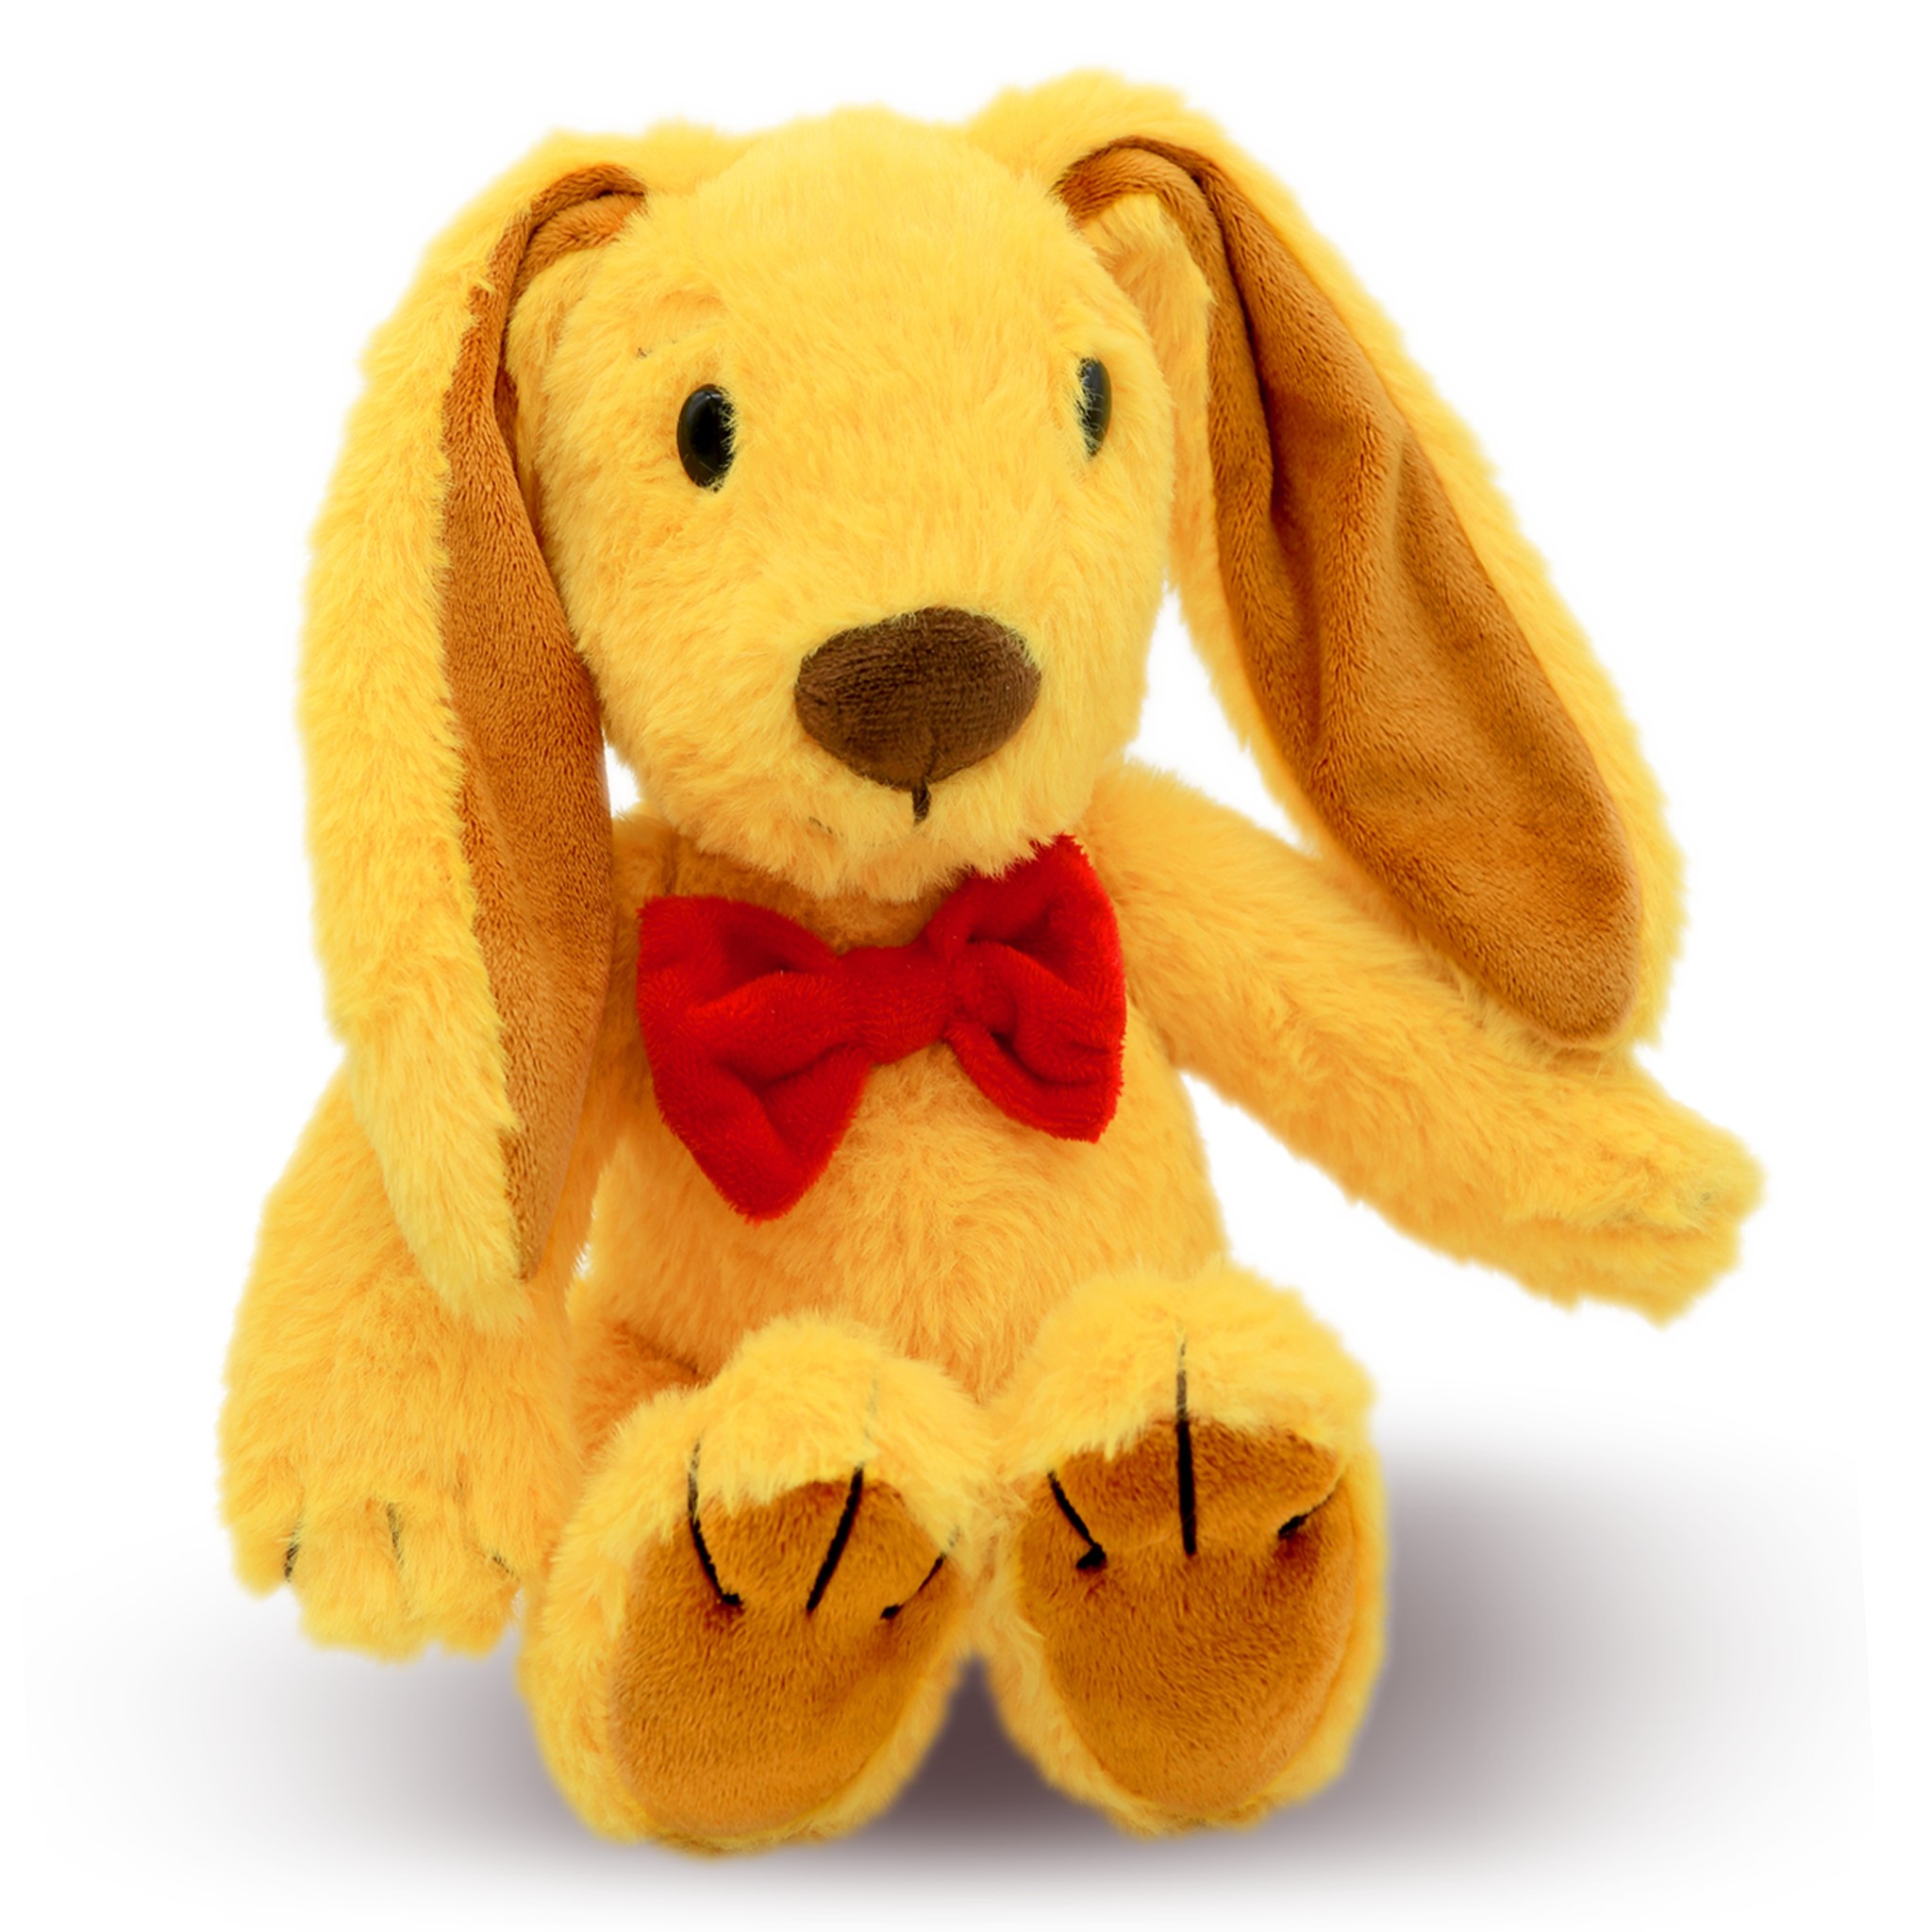 Zeke's Bunny Abacus: The Yellow Stuffed Plush